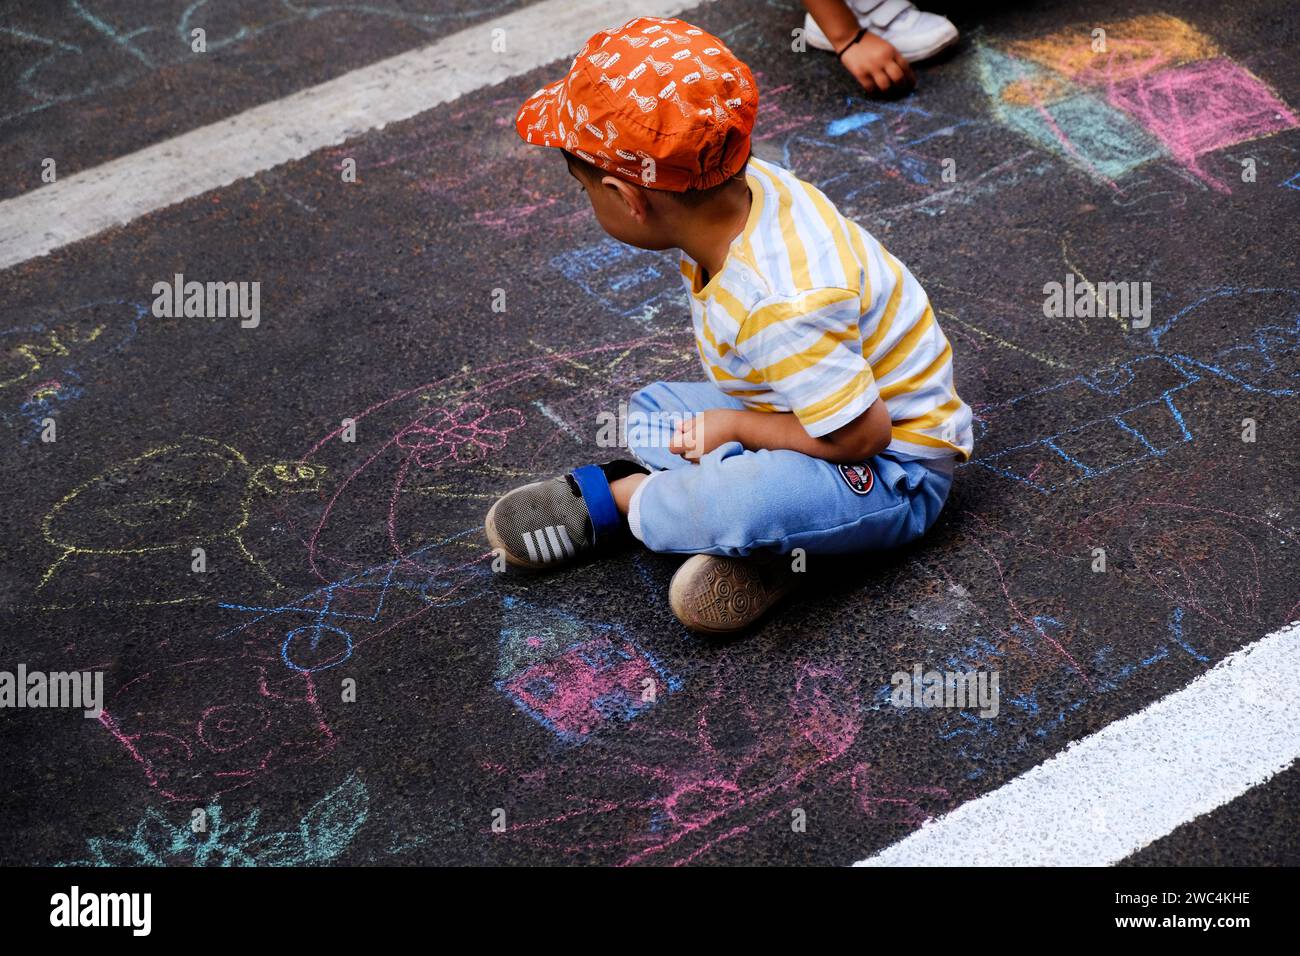 Bambino indiano che disegna con un gesso all'aperto. Immagini per bambini, creatività su strada grigia, attività all'aperto per bambini. vista dall'alto. Foto Stock